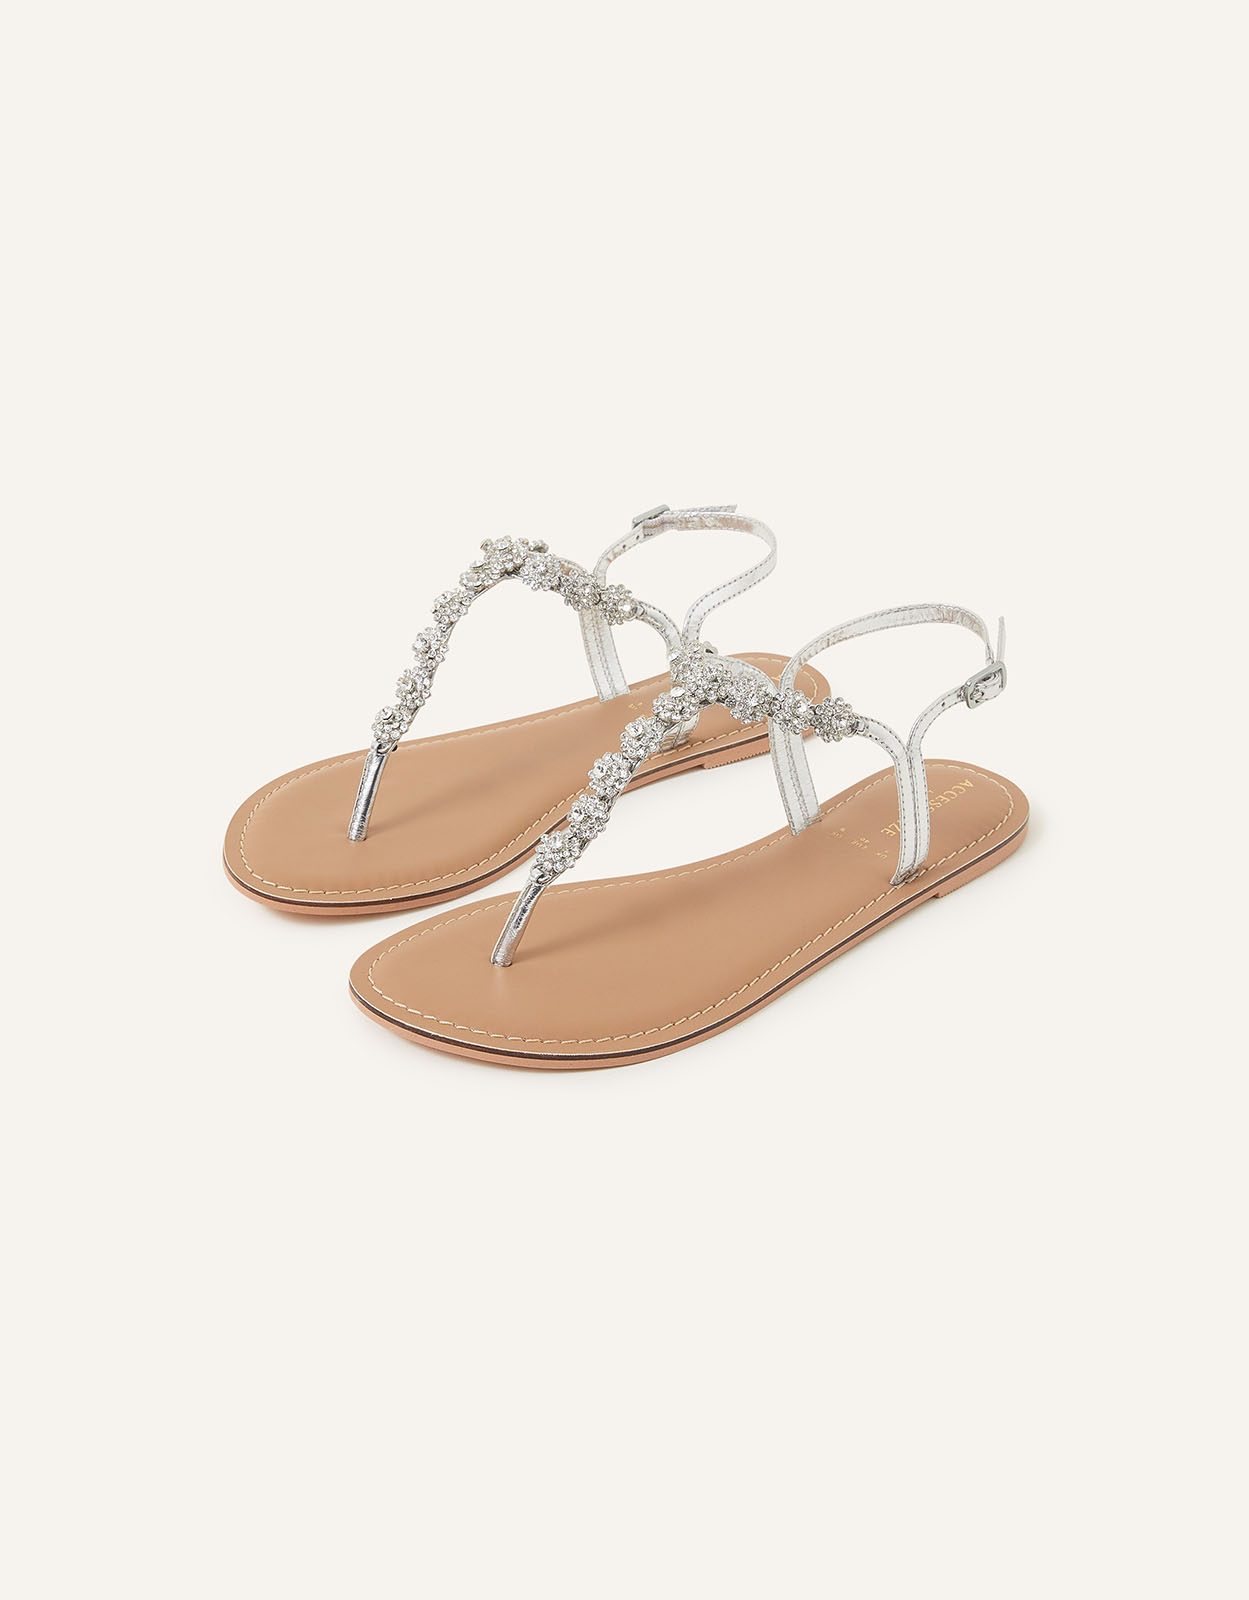 Accessorize Women's Reno Sparkle Diamante Sandals Silver, Size: 37